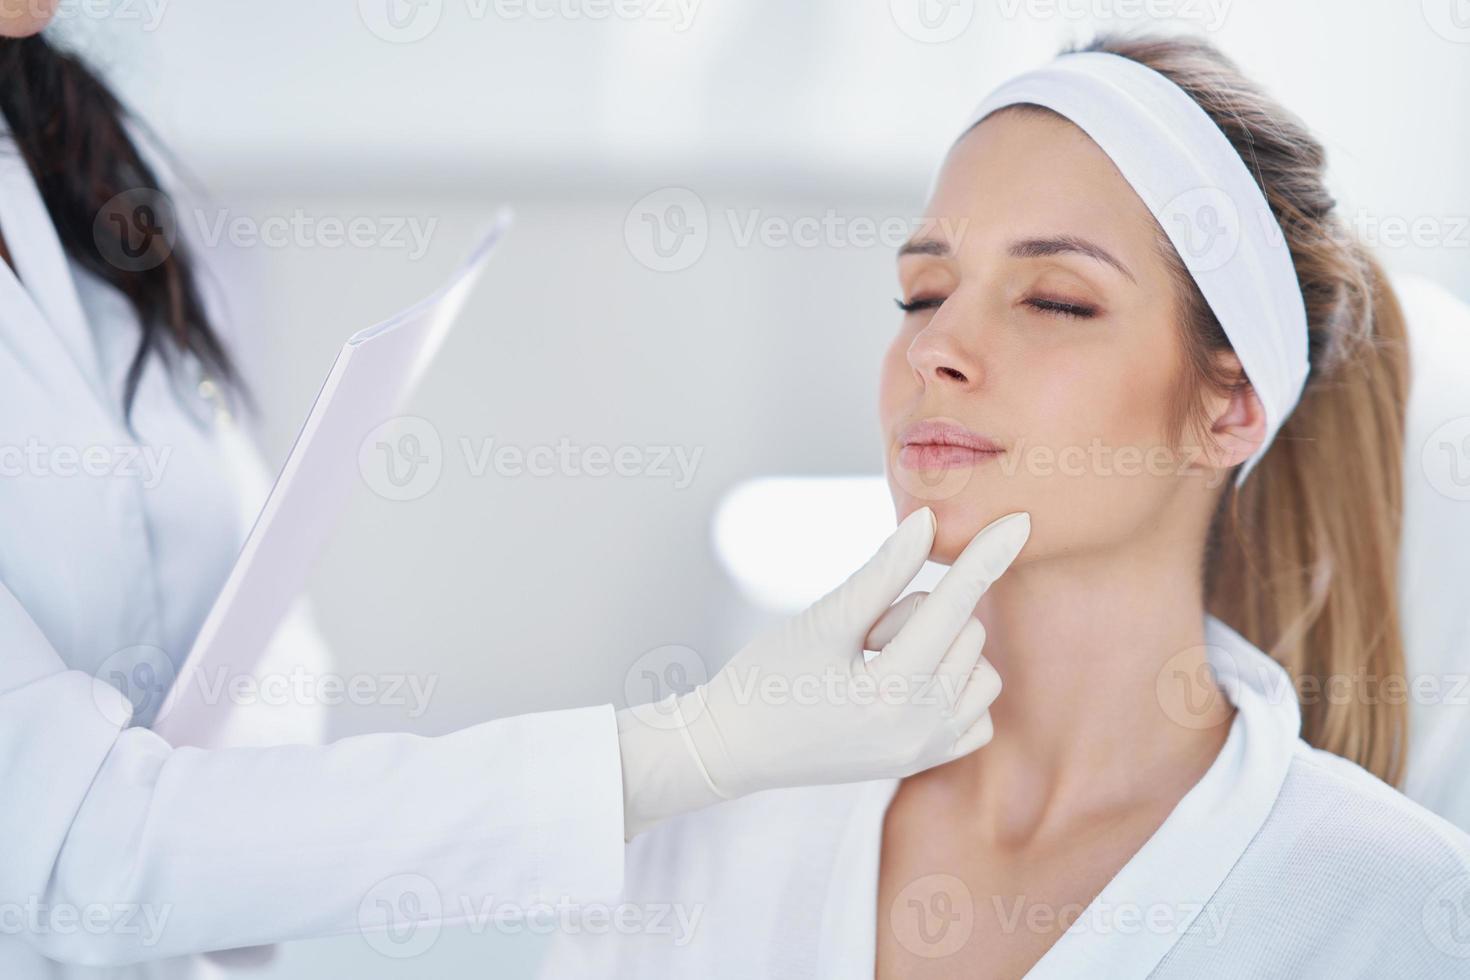 en scen av medicinsk kosmetologi behandlingar bOTOX injektion. foto